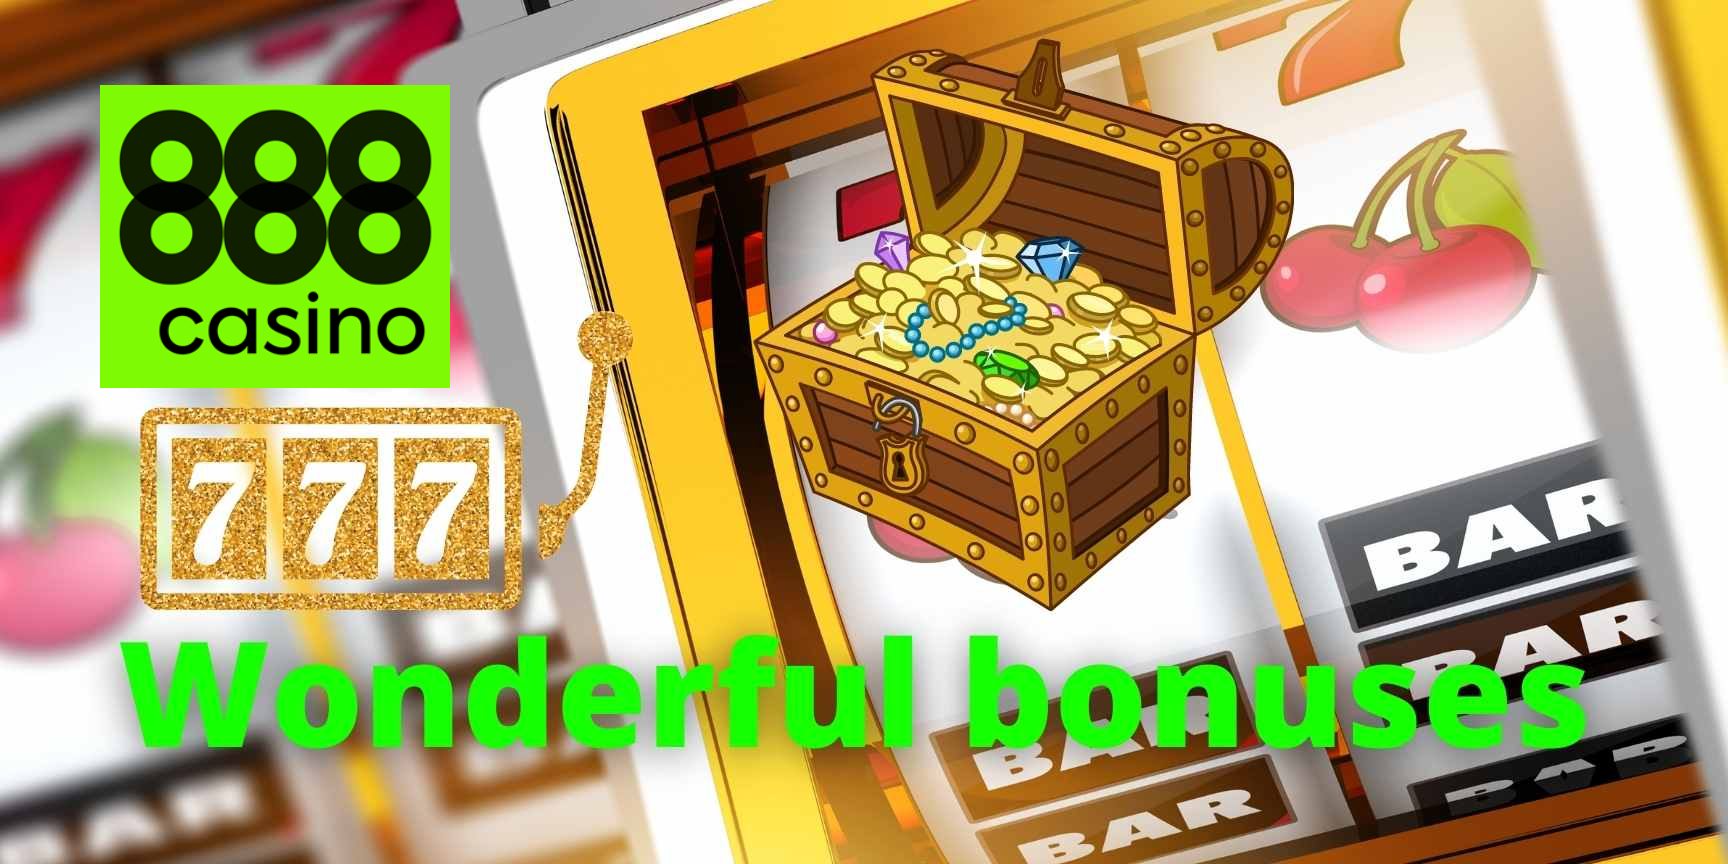 888 casino wonderful bonuses